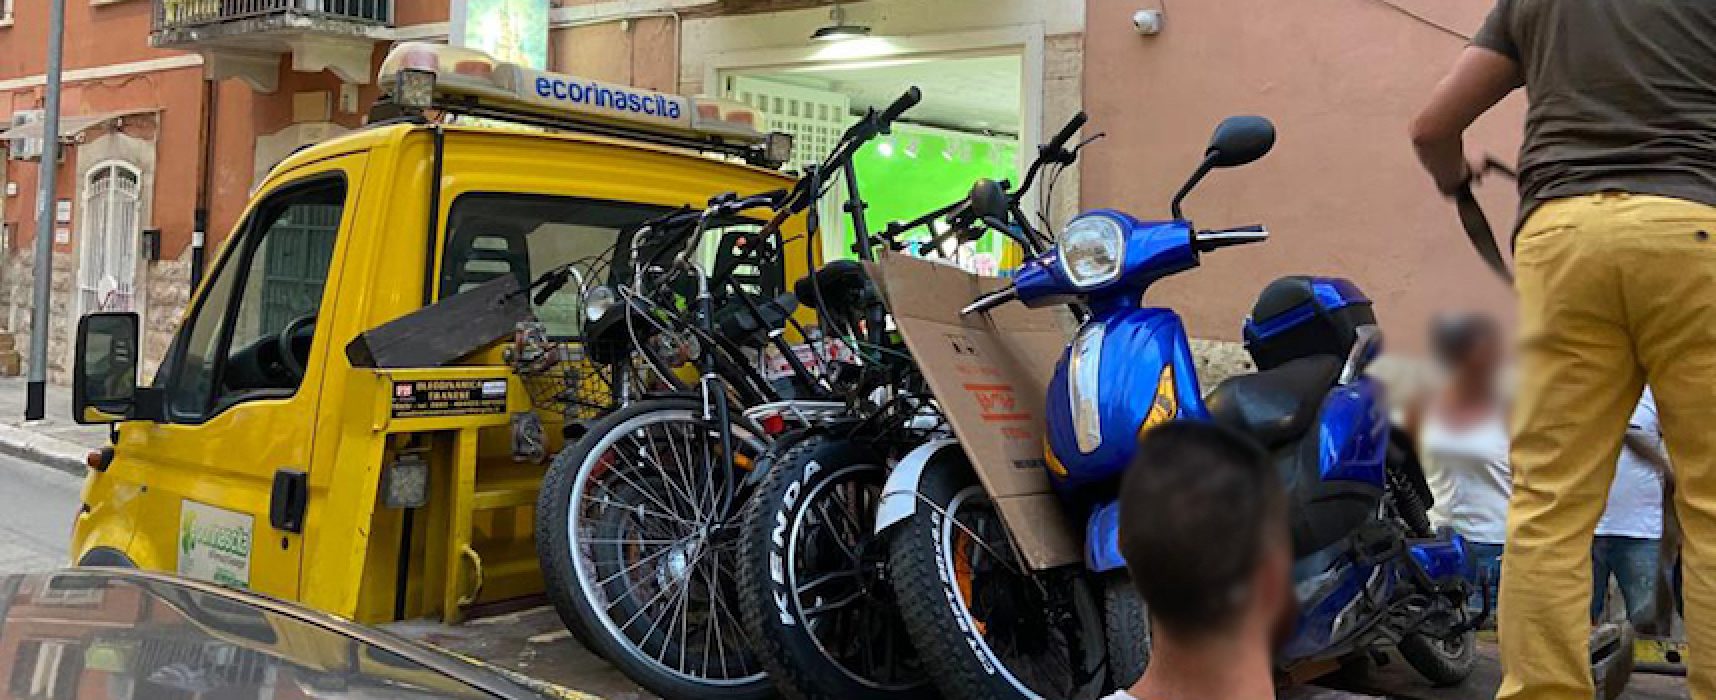 Dodici biciclette elettriche sequestrate: saranno sottoposte a verifica per decidere su confisca